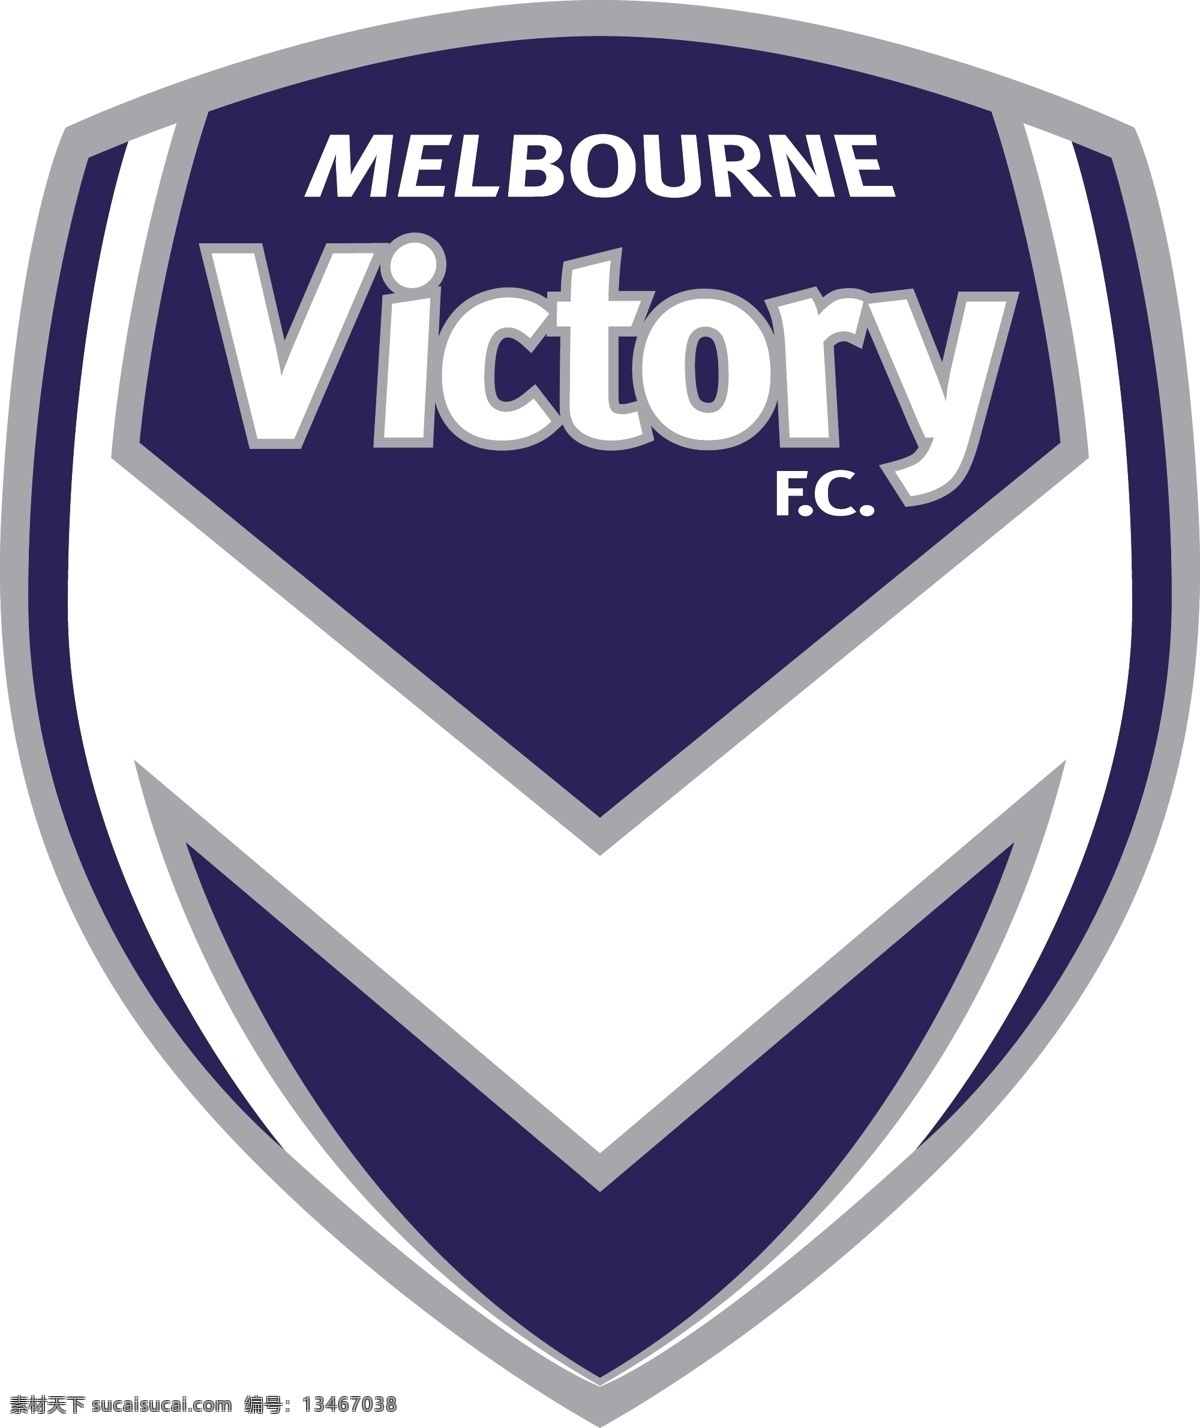 墨尔本 胜利 足球 俱乐部 徽标 logo设计 澳大利亚 澳超 联赛 杯赛 亚足联 亚冠 矢量图